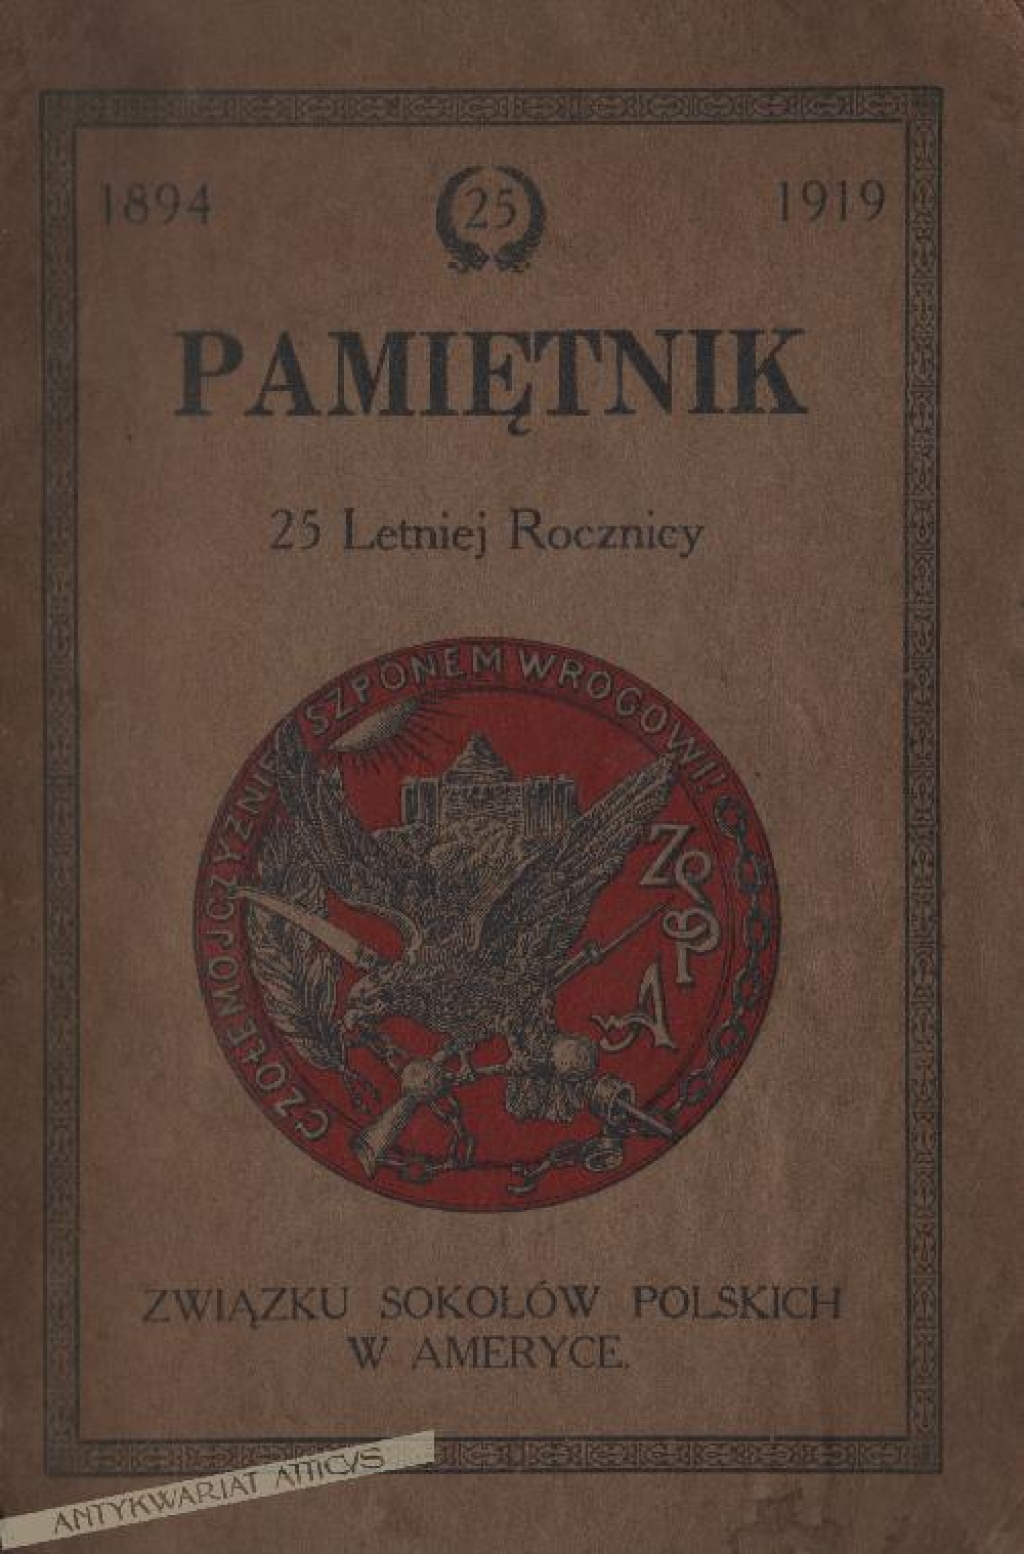 Pamiętnik 25 Letniej Rocznicy Związku Sokołów Polskich w Ameryce 1894-1919